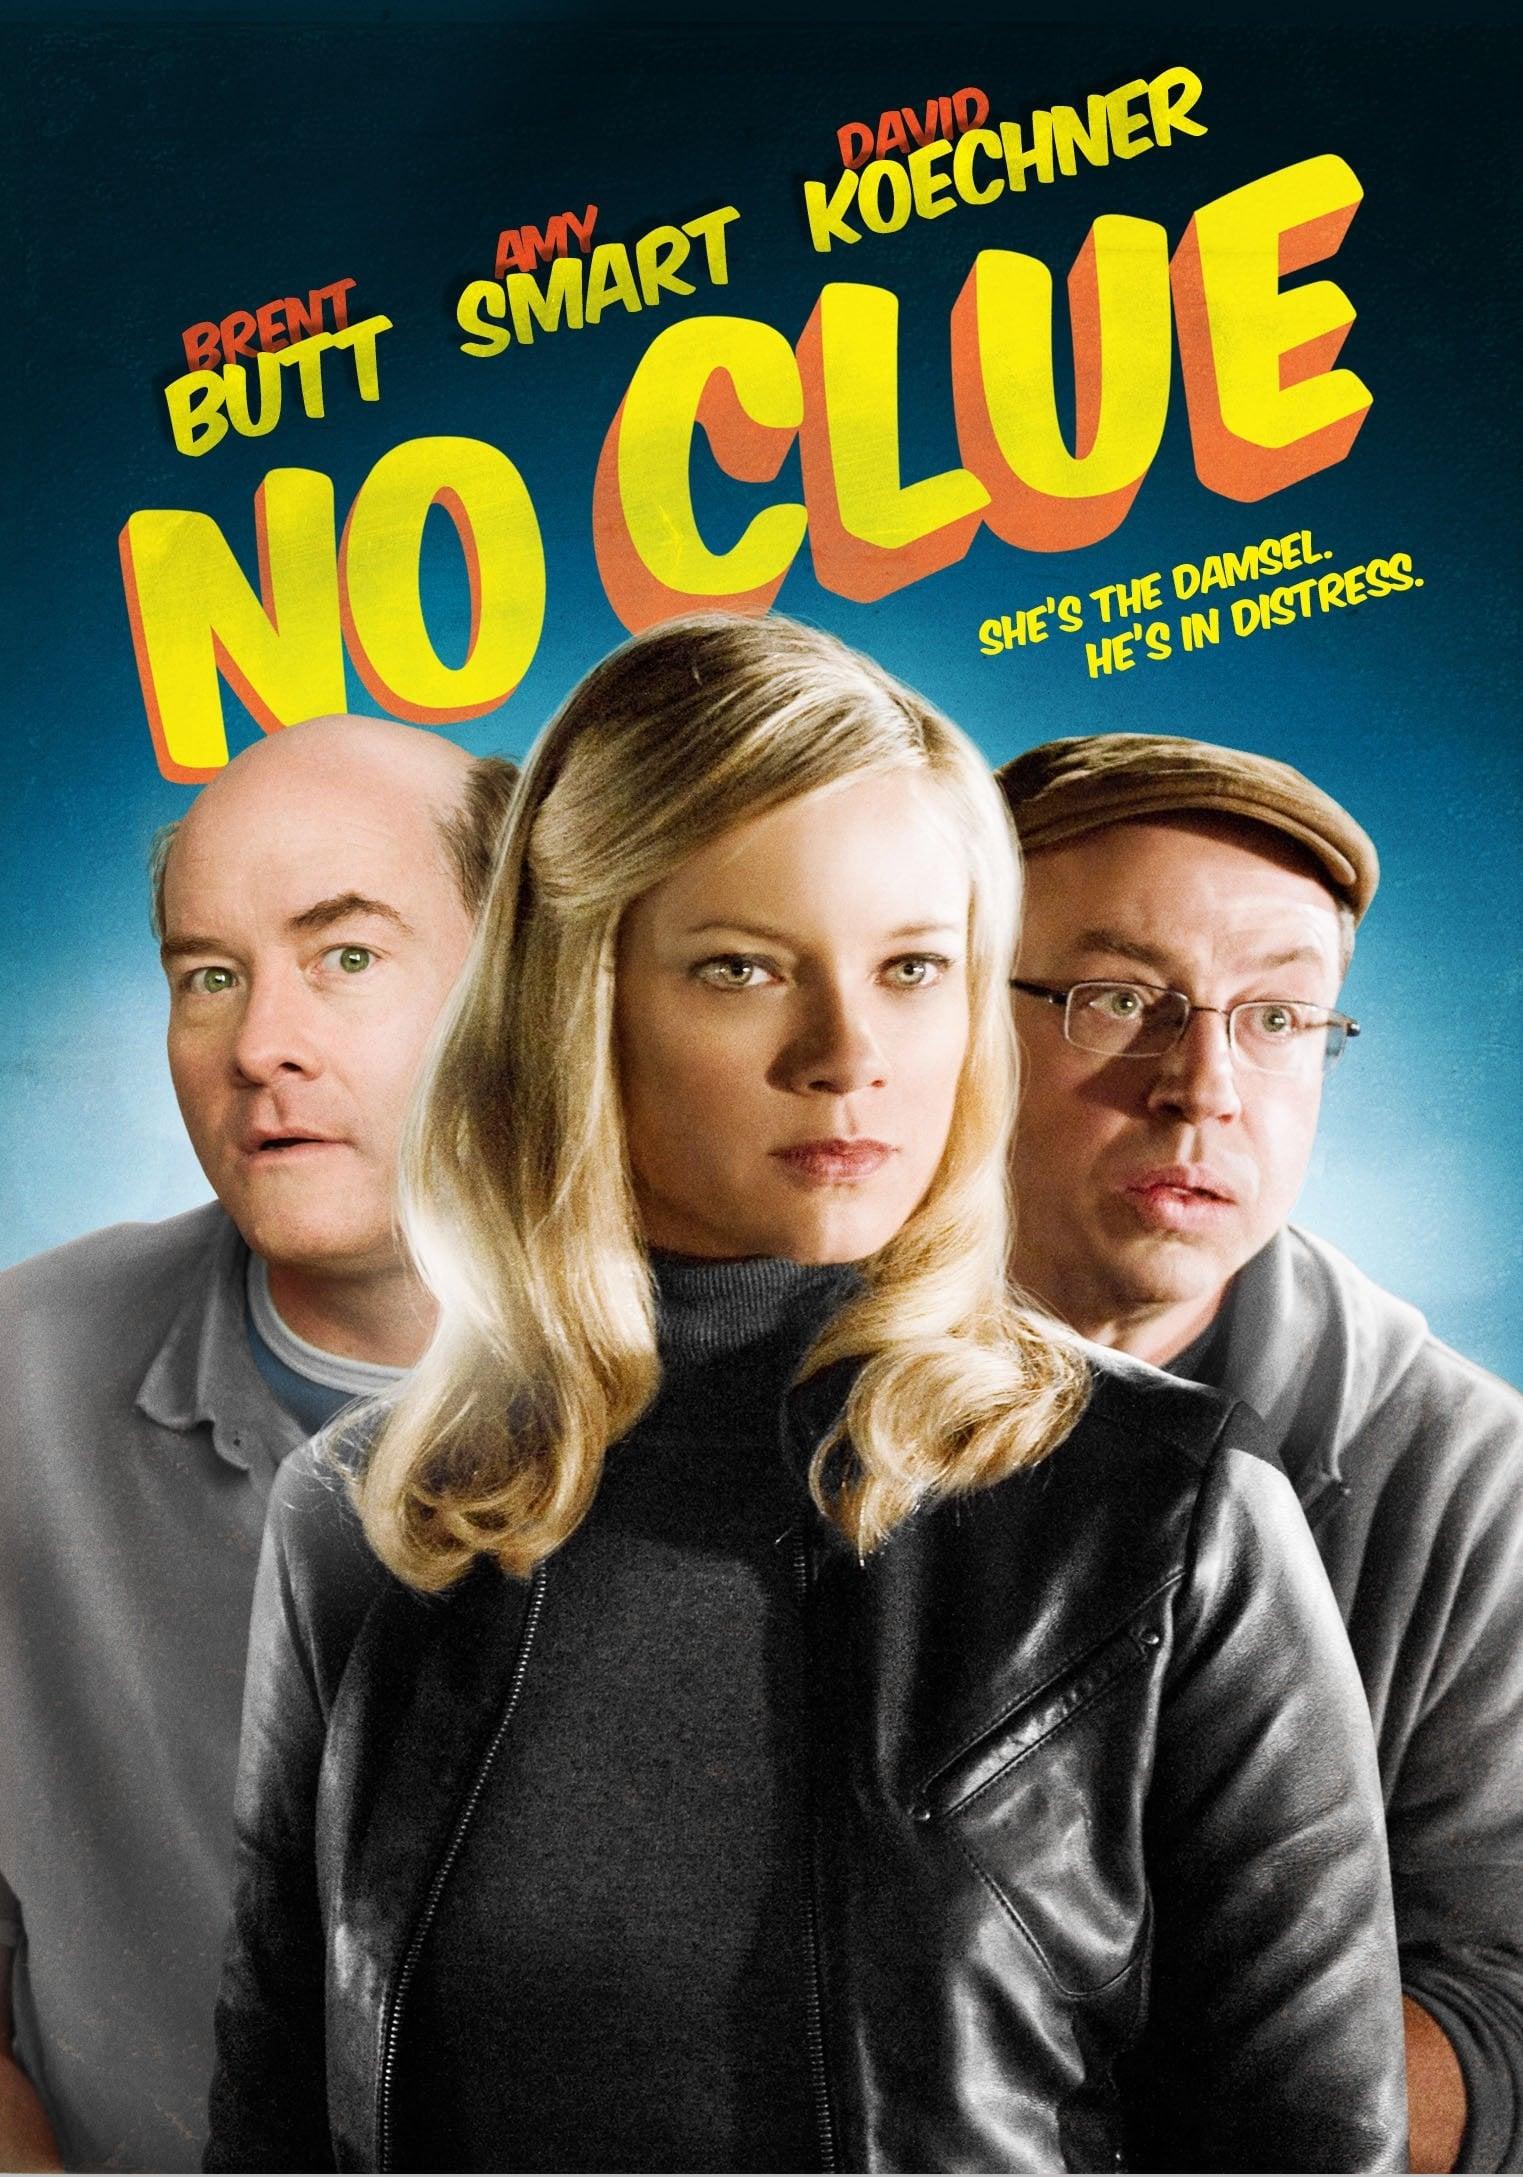 No Clue poster